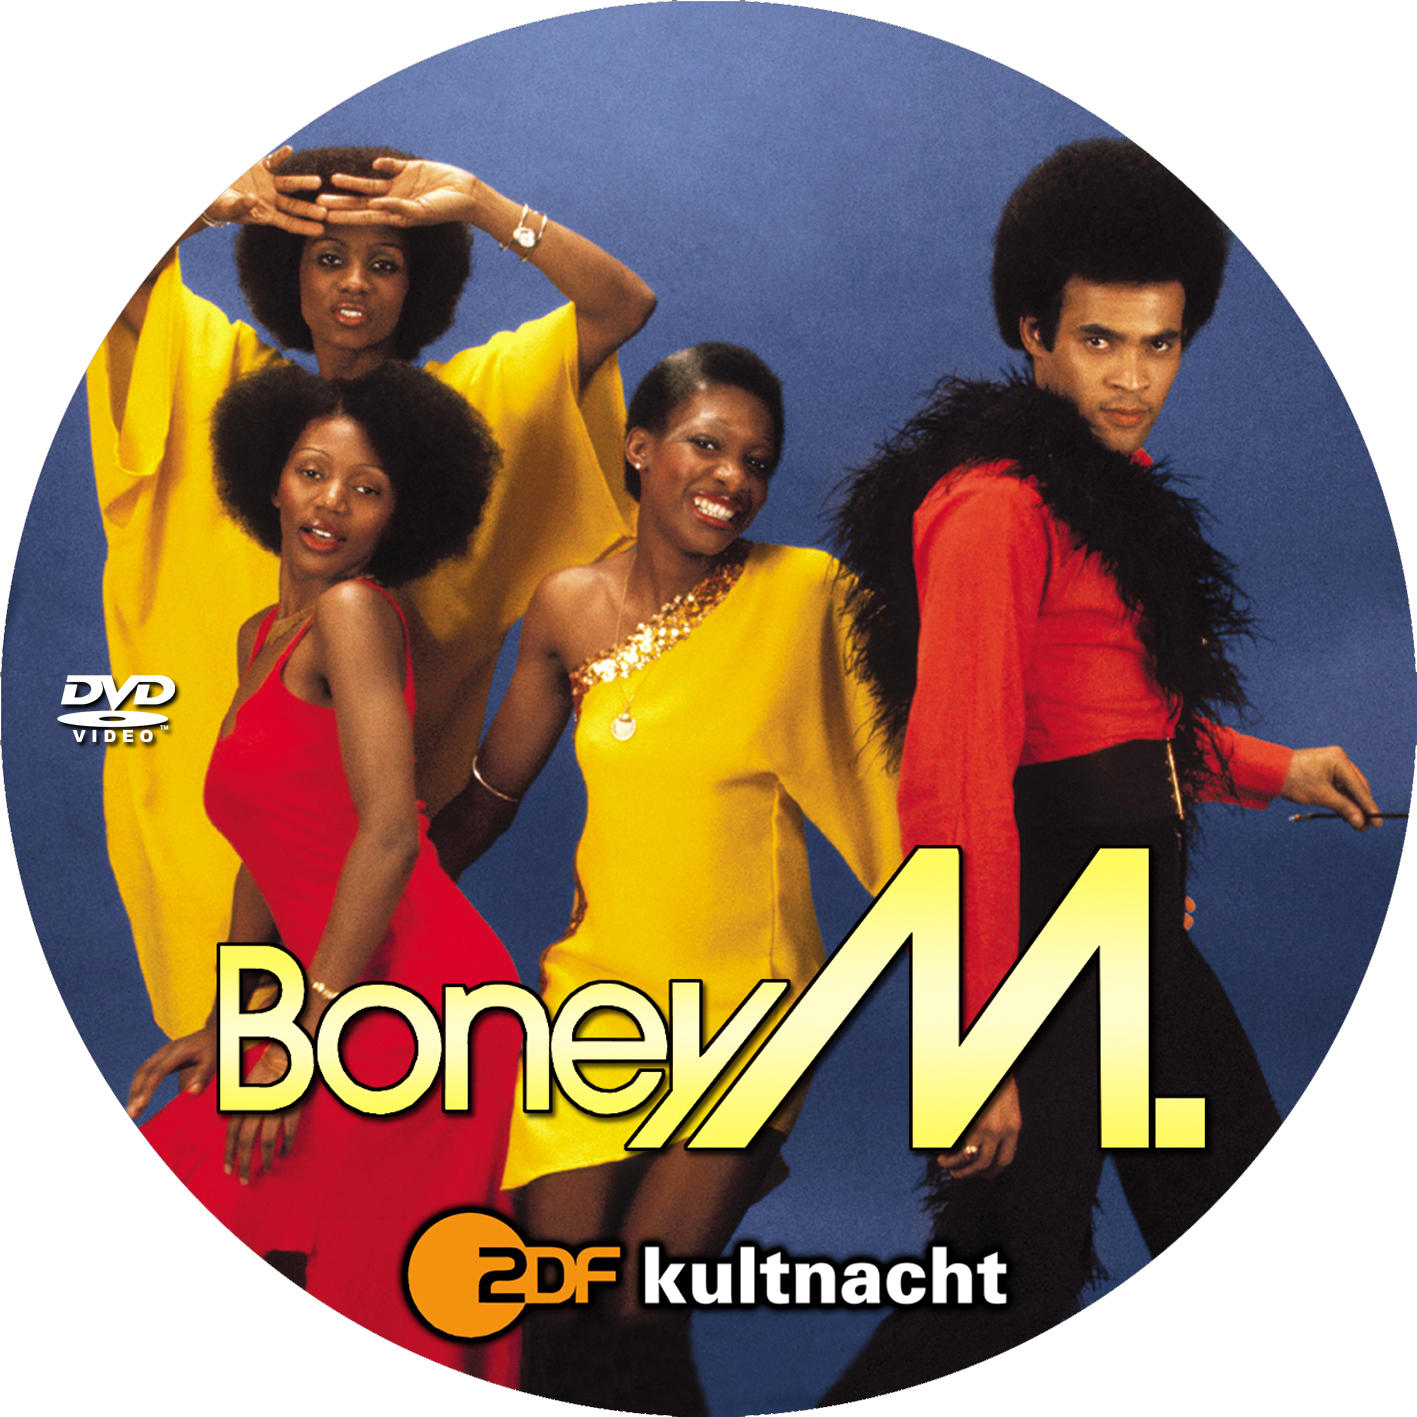 Boney m happy. Группа Boney m.. Группа Boney m. дискография. Группа Boney m. в 80. Группа Бони м 1975г.